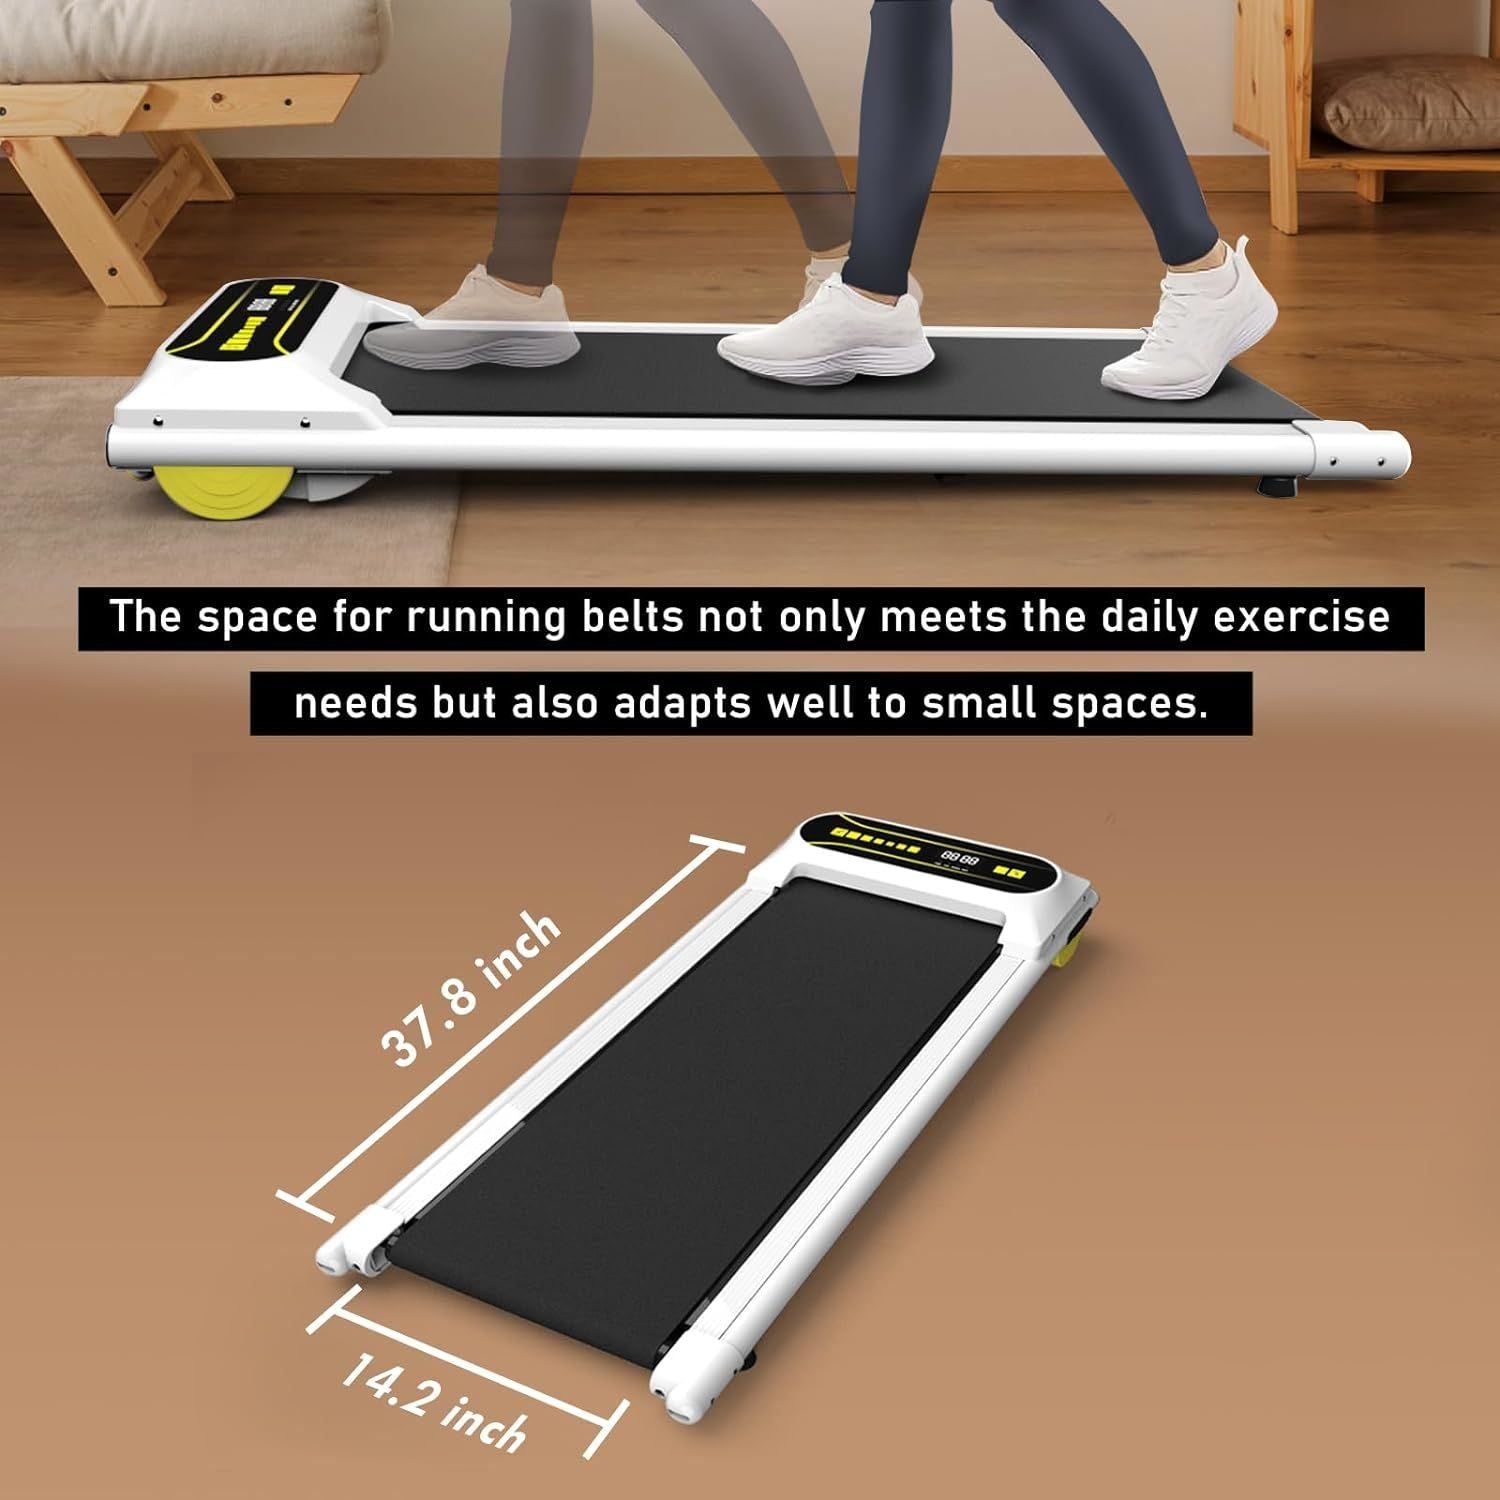 265 lbs Capacity Walking Jogging Running Small Space Under Desk Treadmill